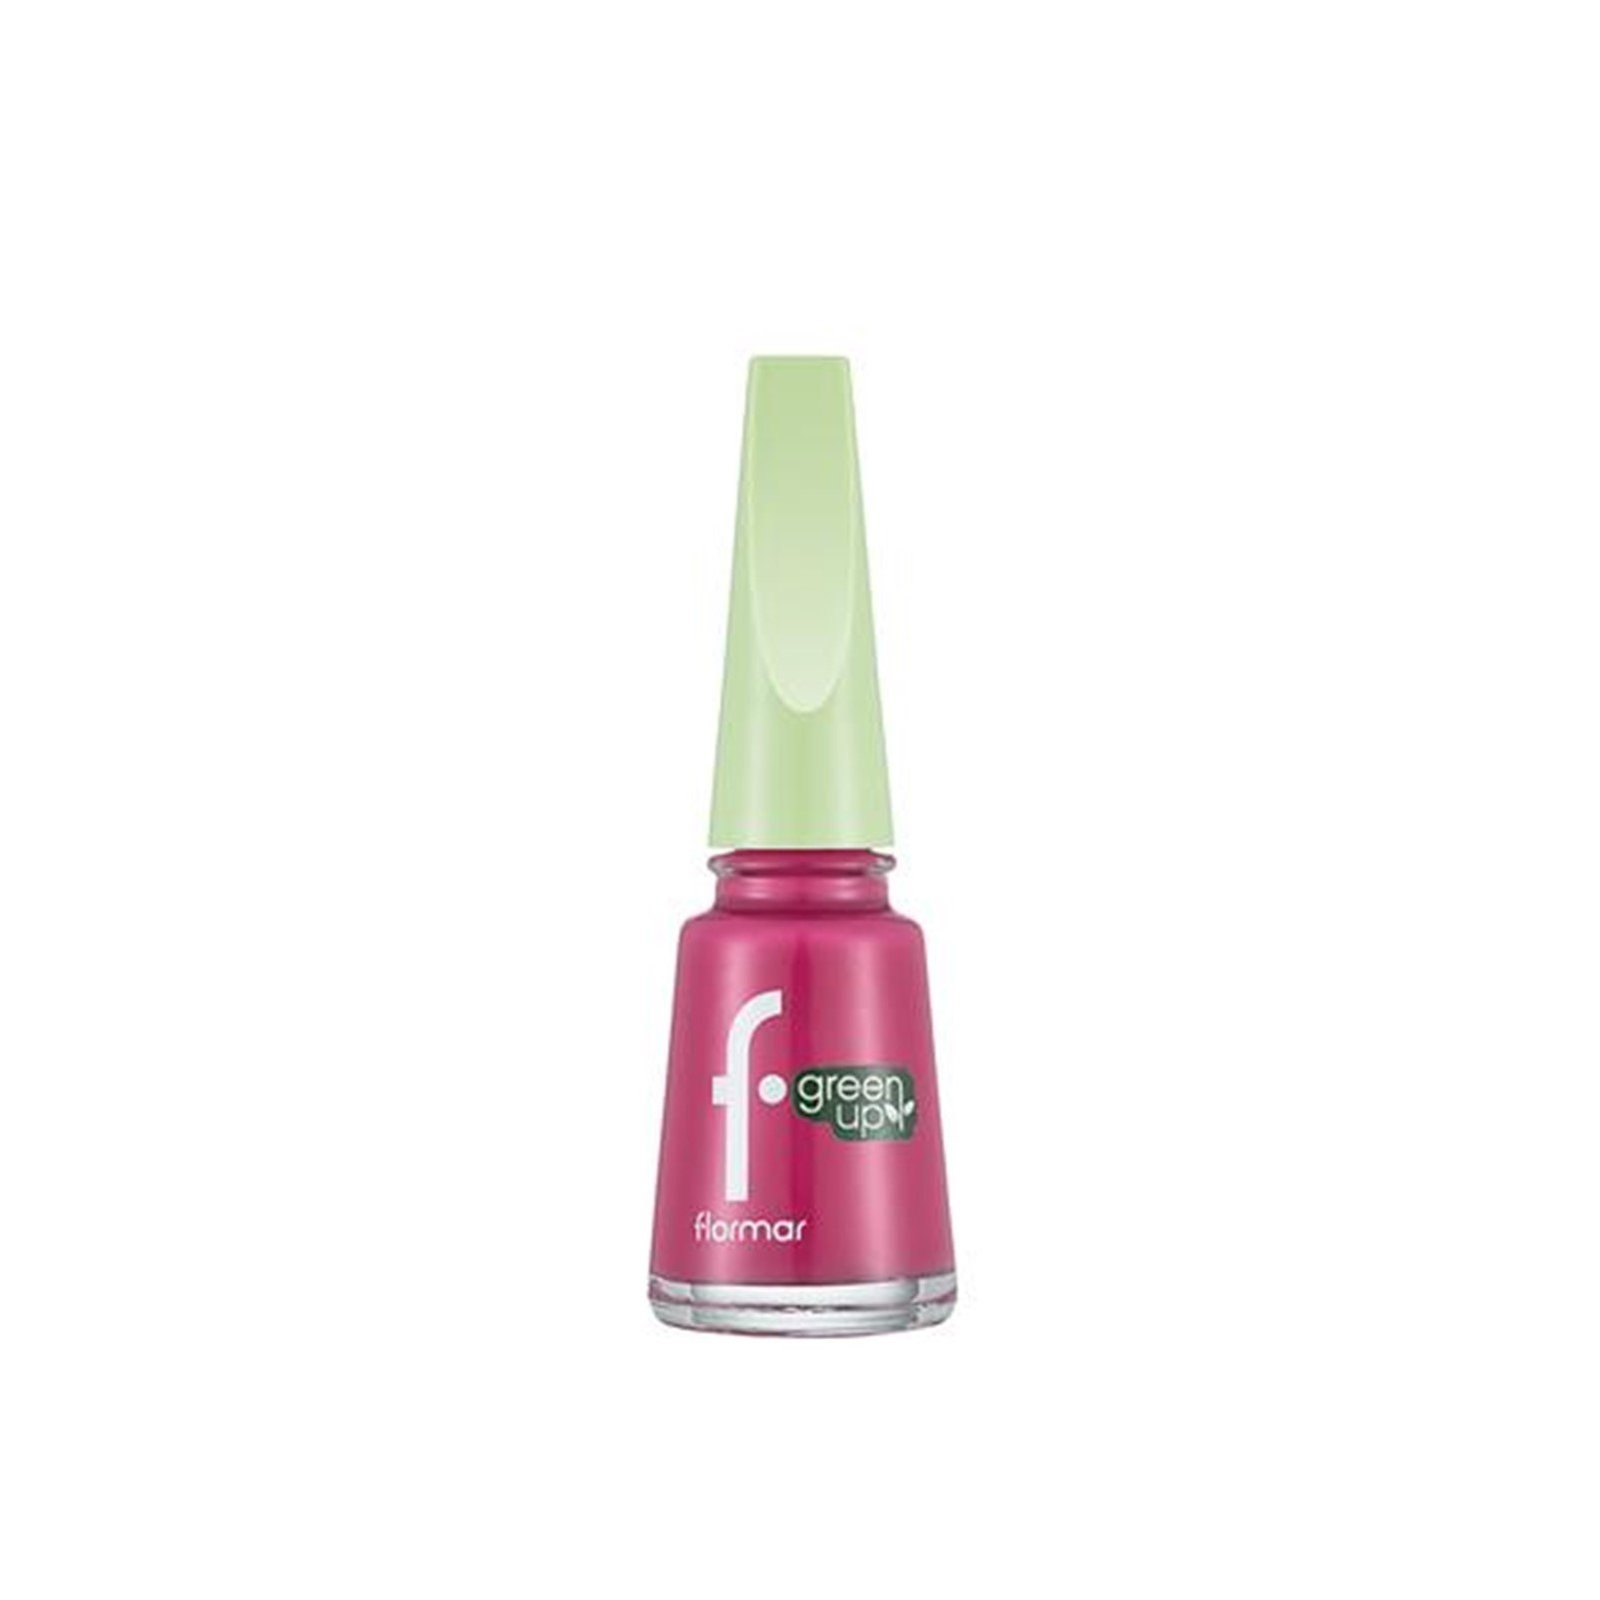 Flormar Green Up Nail Enamel 006 Elegant Pink 11ml